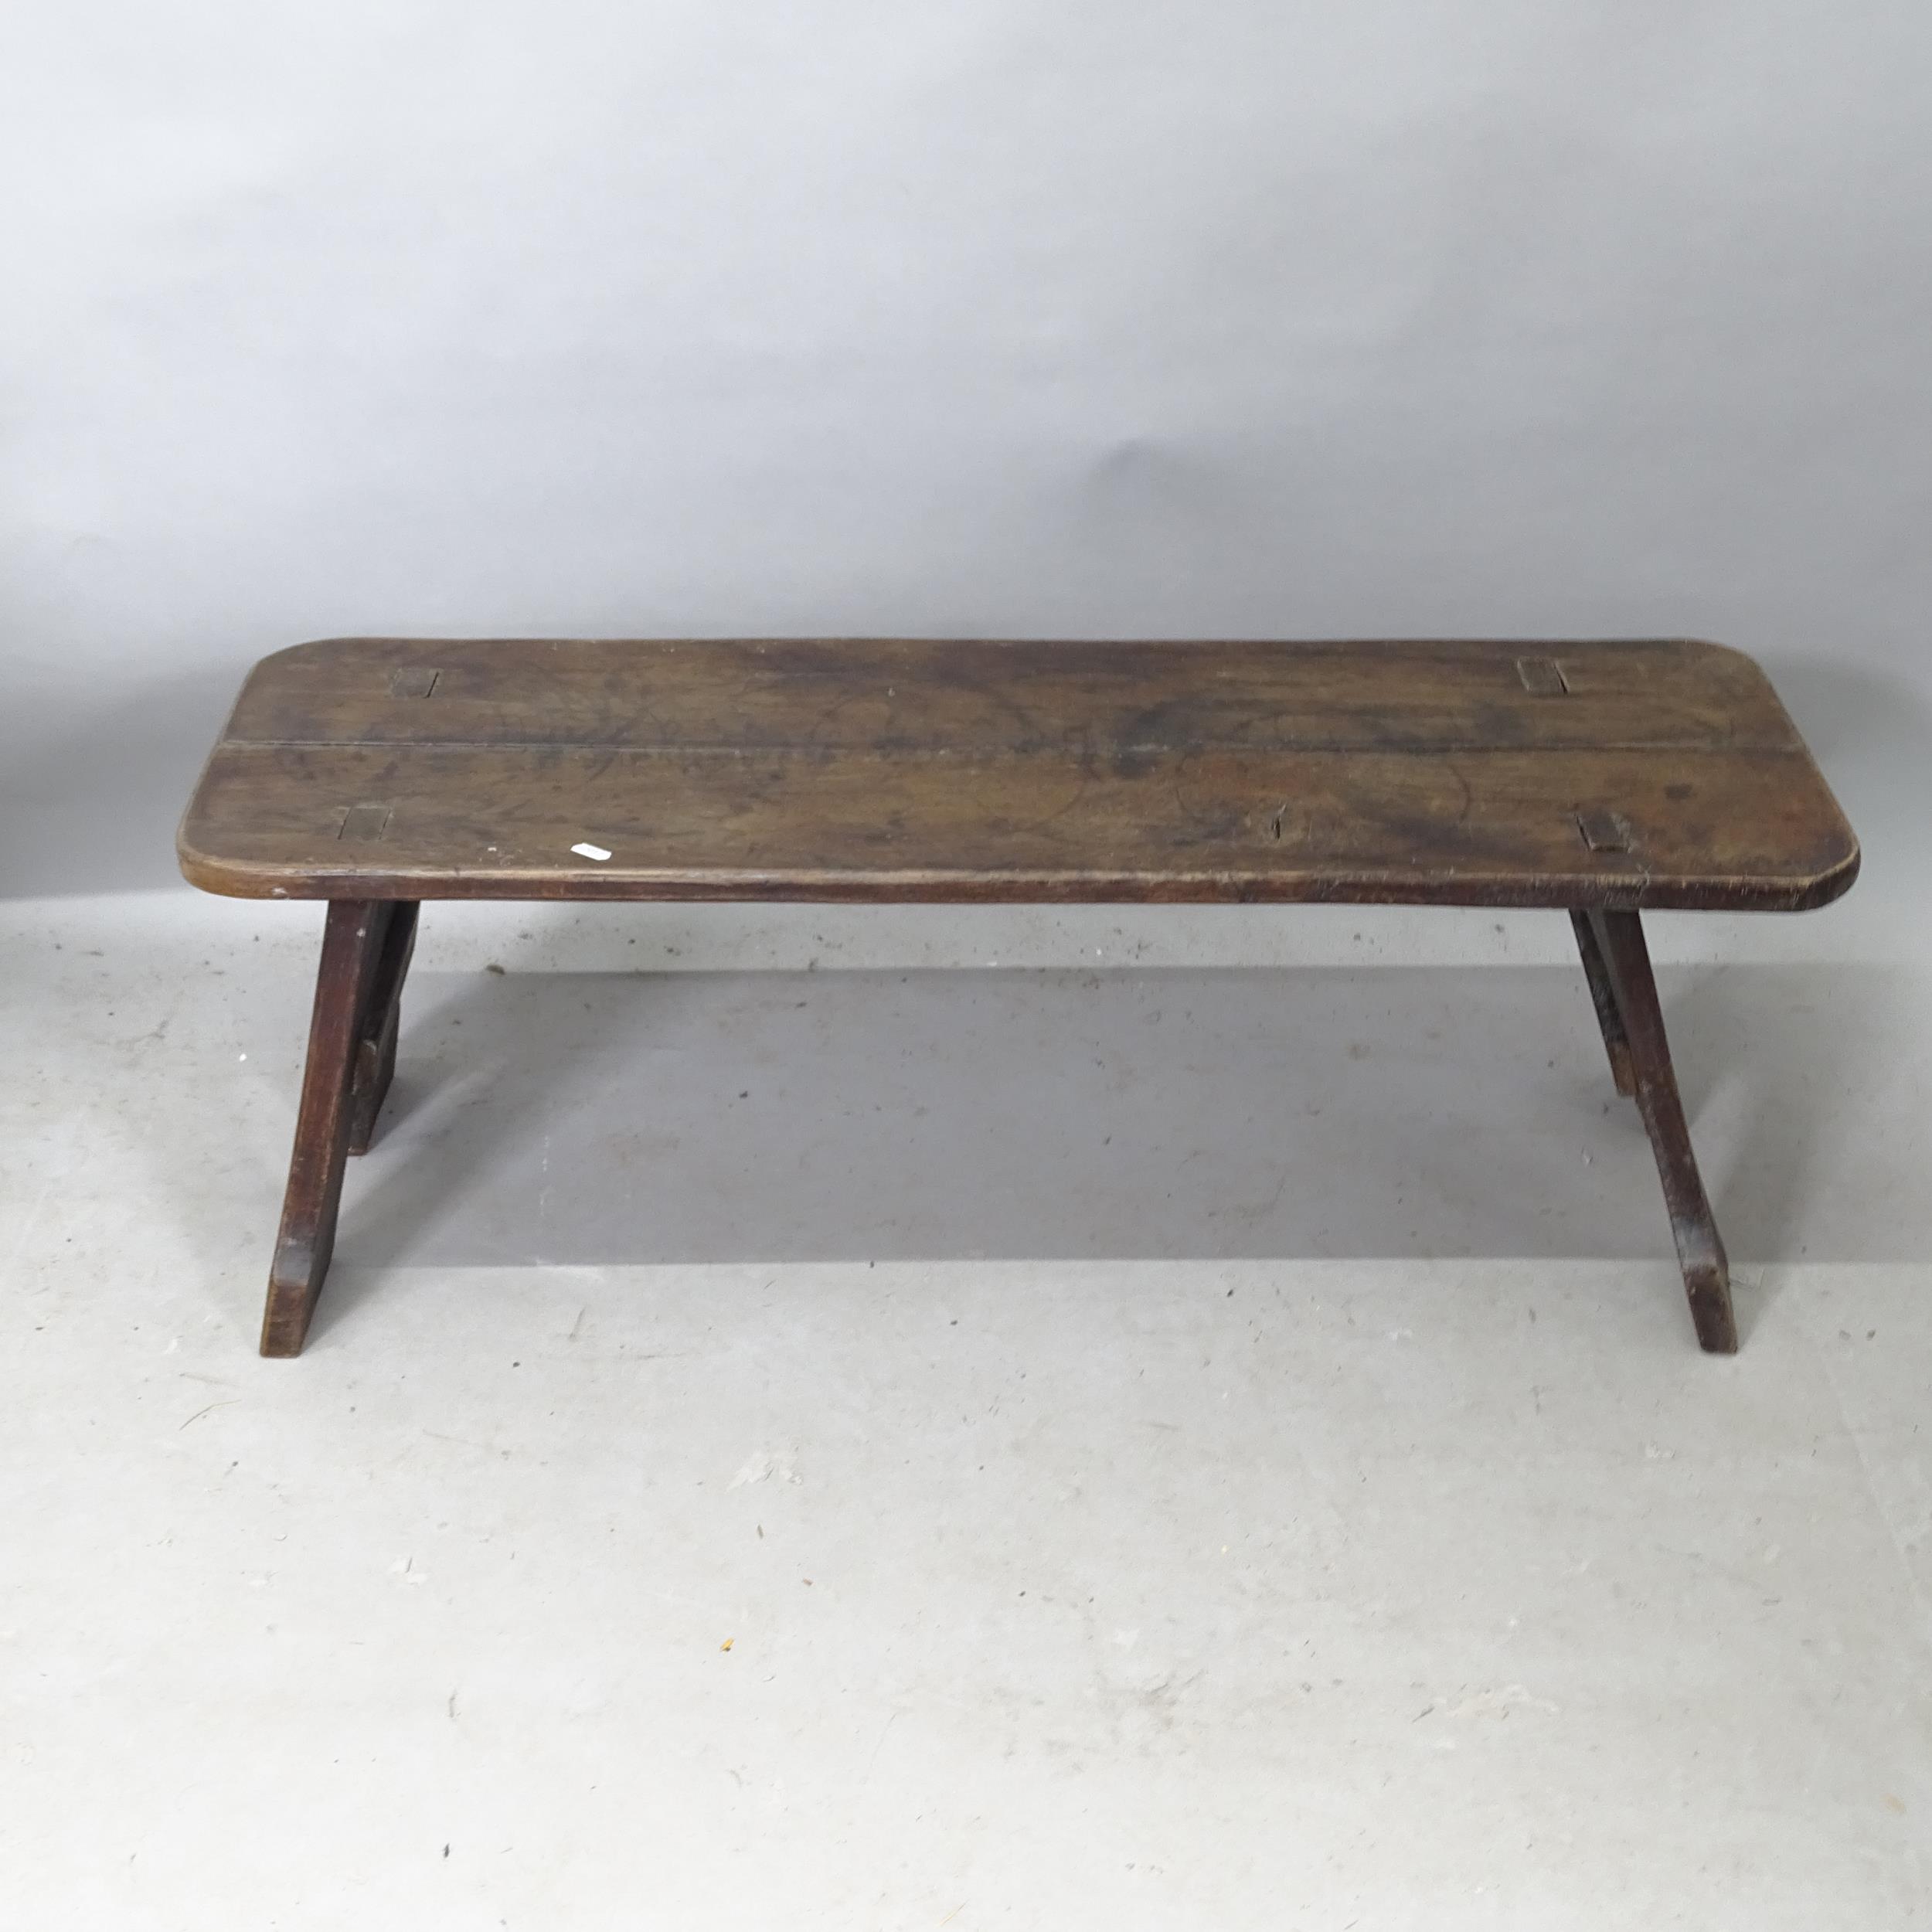 An Antique elm bench, 103cm x 36cm x 35cm